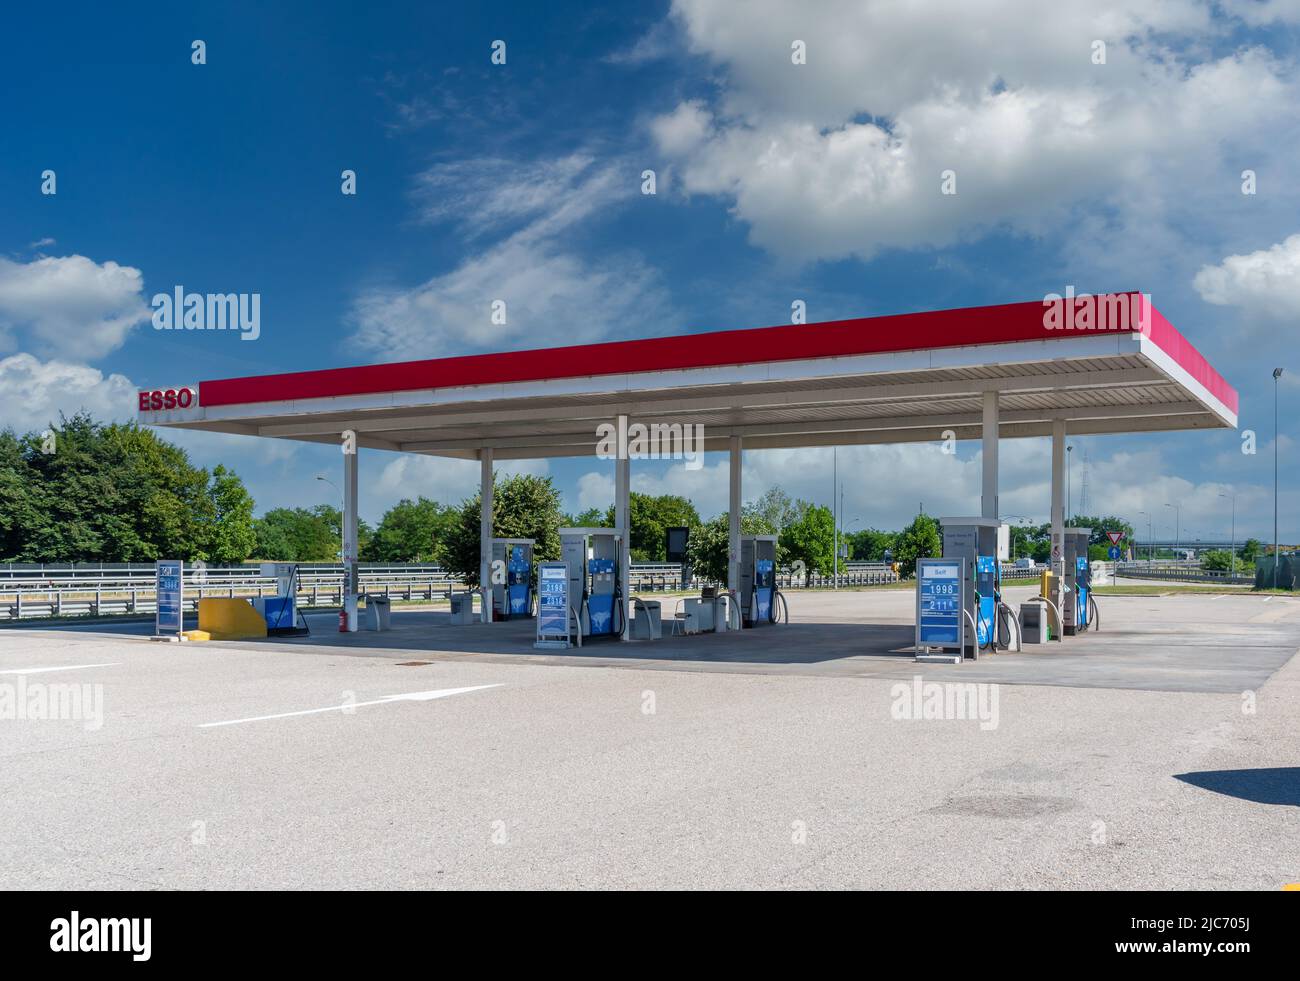 Turin, Italien - 10. Juni 2022: Esso-Tankstelle auf der Autobahn Turin - Savona Esso ist eine Marke der weltweiten Öl i, die mit hochpreisigen Ausstellern für Kraftstoff aufkommt Stockfoto